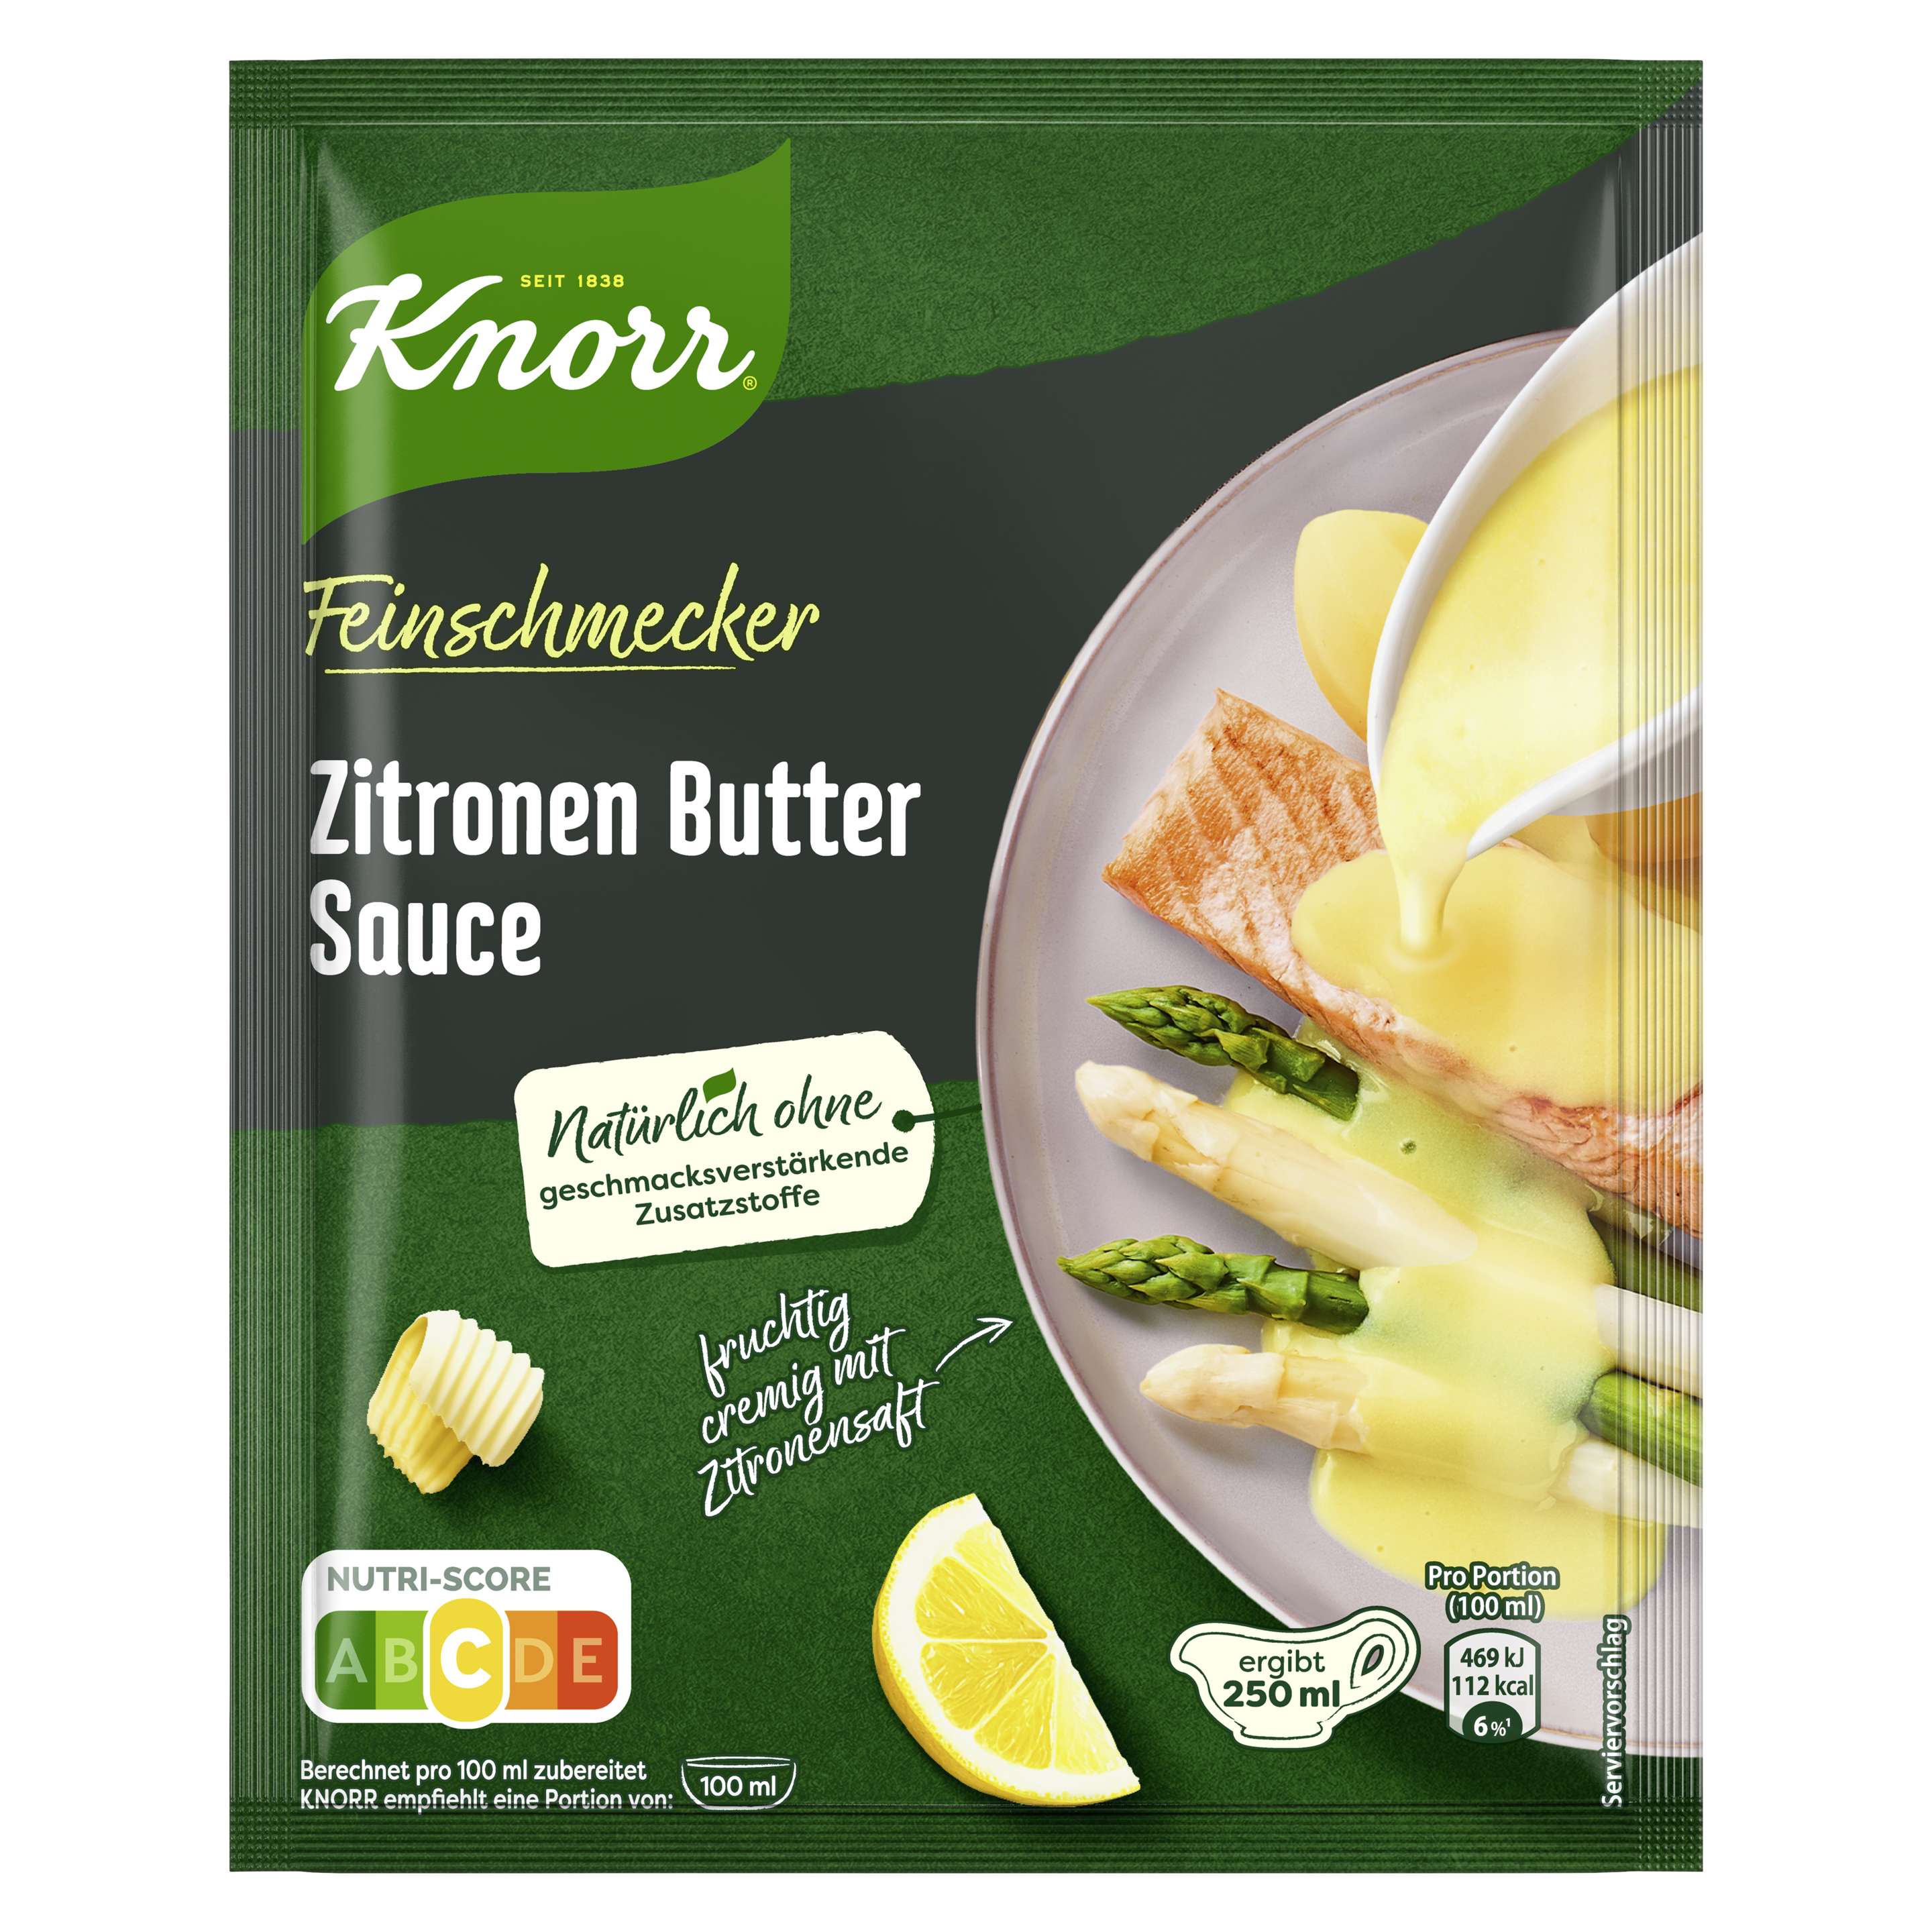 Knorr Feinschmecker Zitronen Butter Sauce ergibt 250 ml